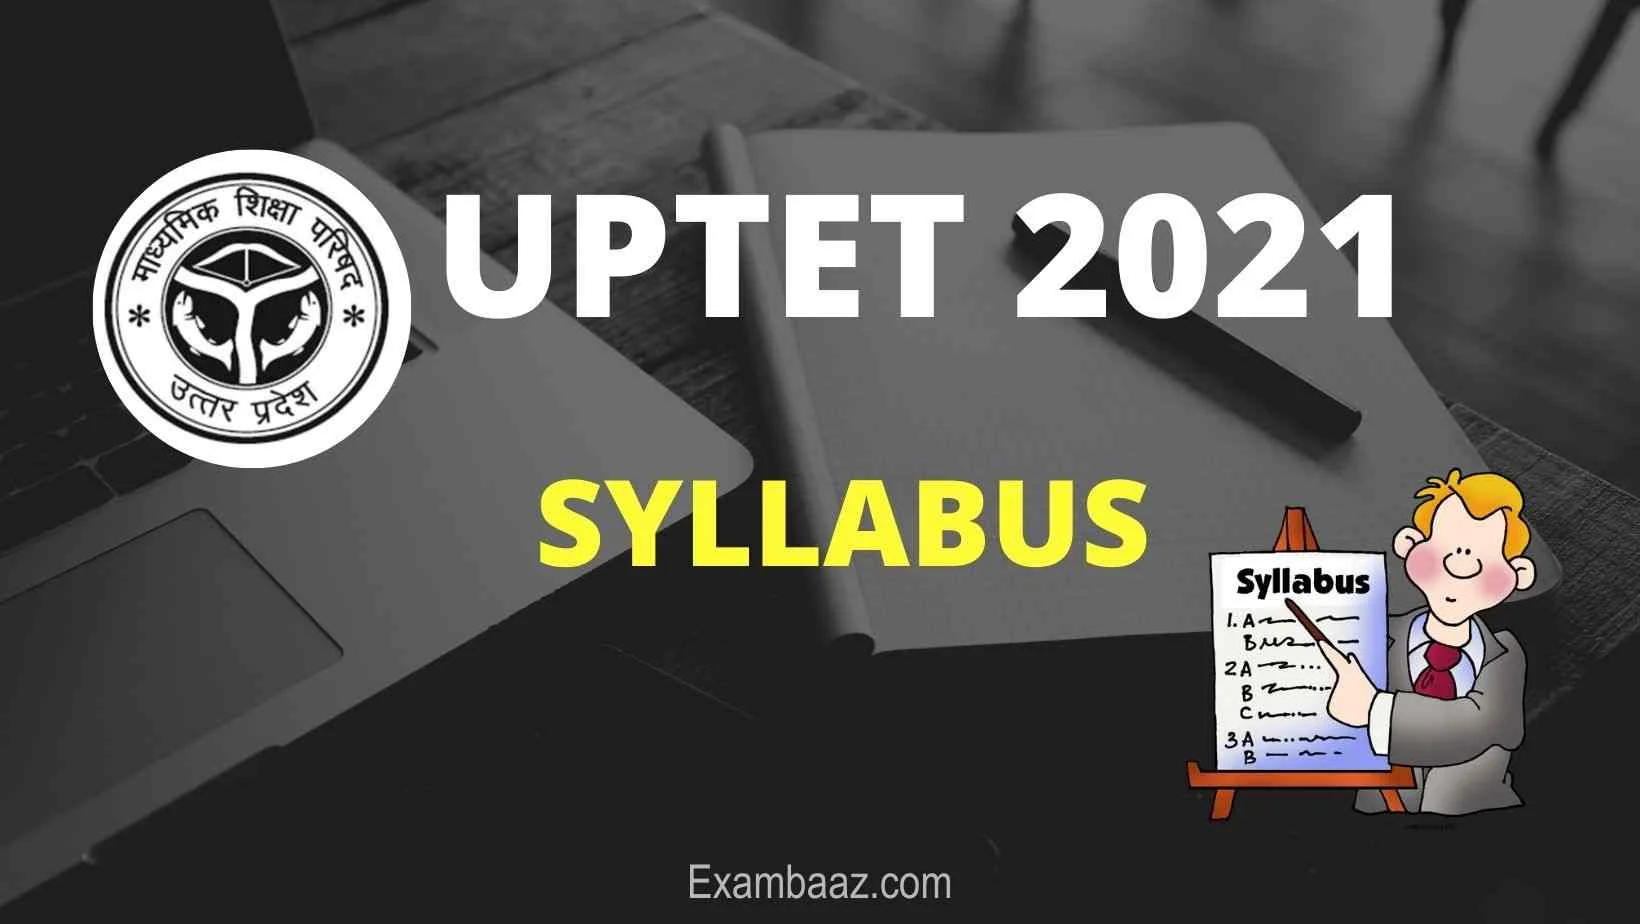 UPTET 2021 Syllabus in hindi english